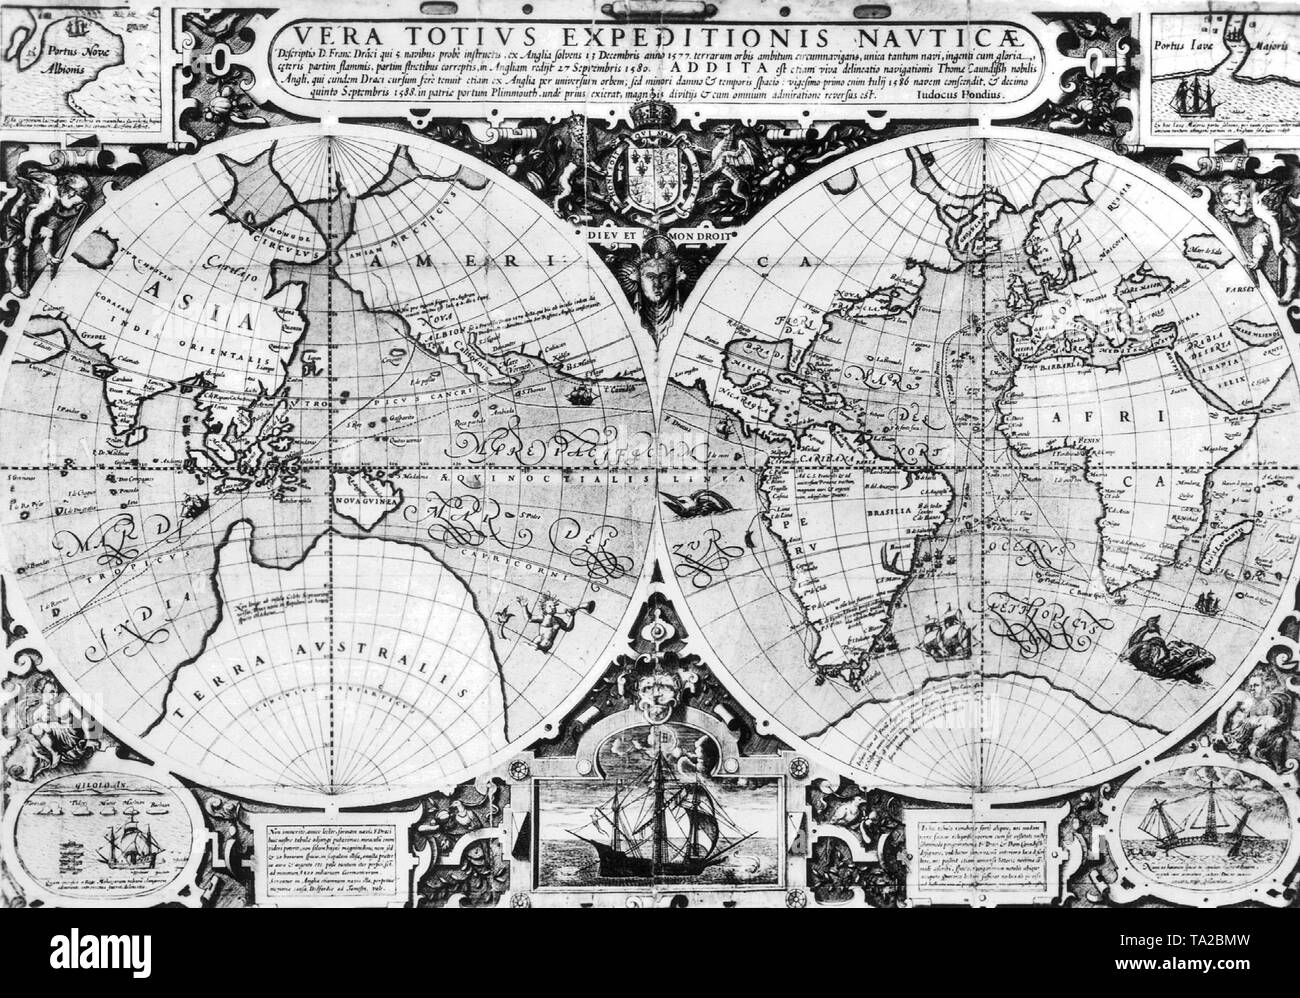 Carte montrant la circumnavigation du globe par Sir Francis Drake (1577-80) et Thomas Cavendish (1586-88). Gravure par Jodocus Hondius, autour de 1595. Banque D'Images